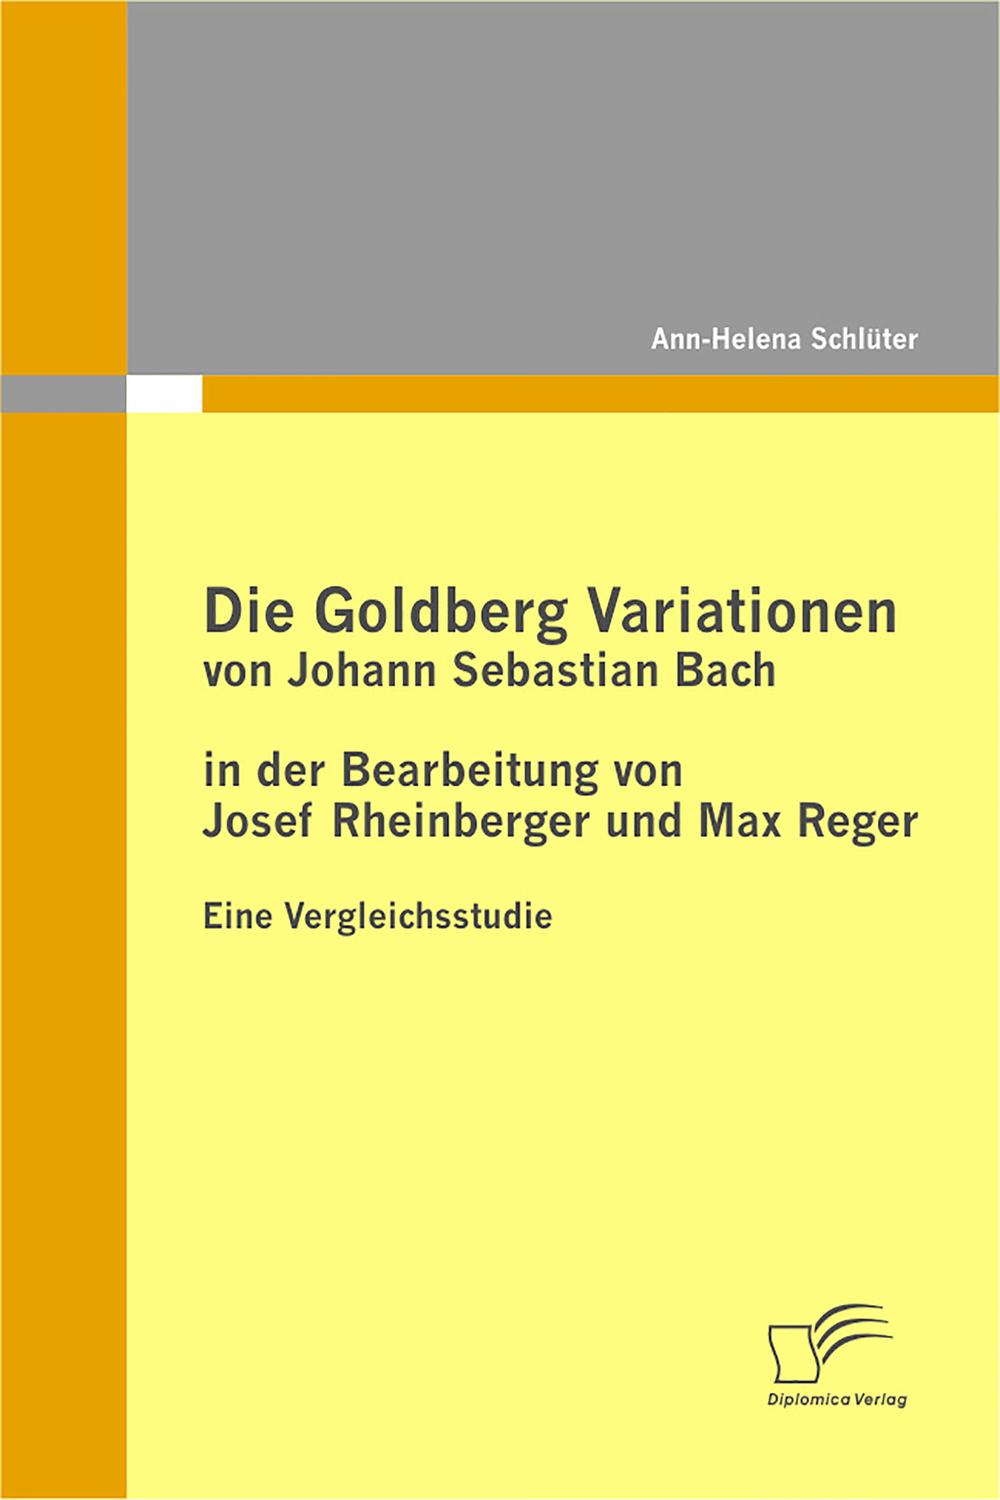 Die Goldberg Variationen von Johann Sebastian Bach in der Bearbeitung von Josef Rheinberger und Max Reger - Ann-Helena Schlüter